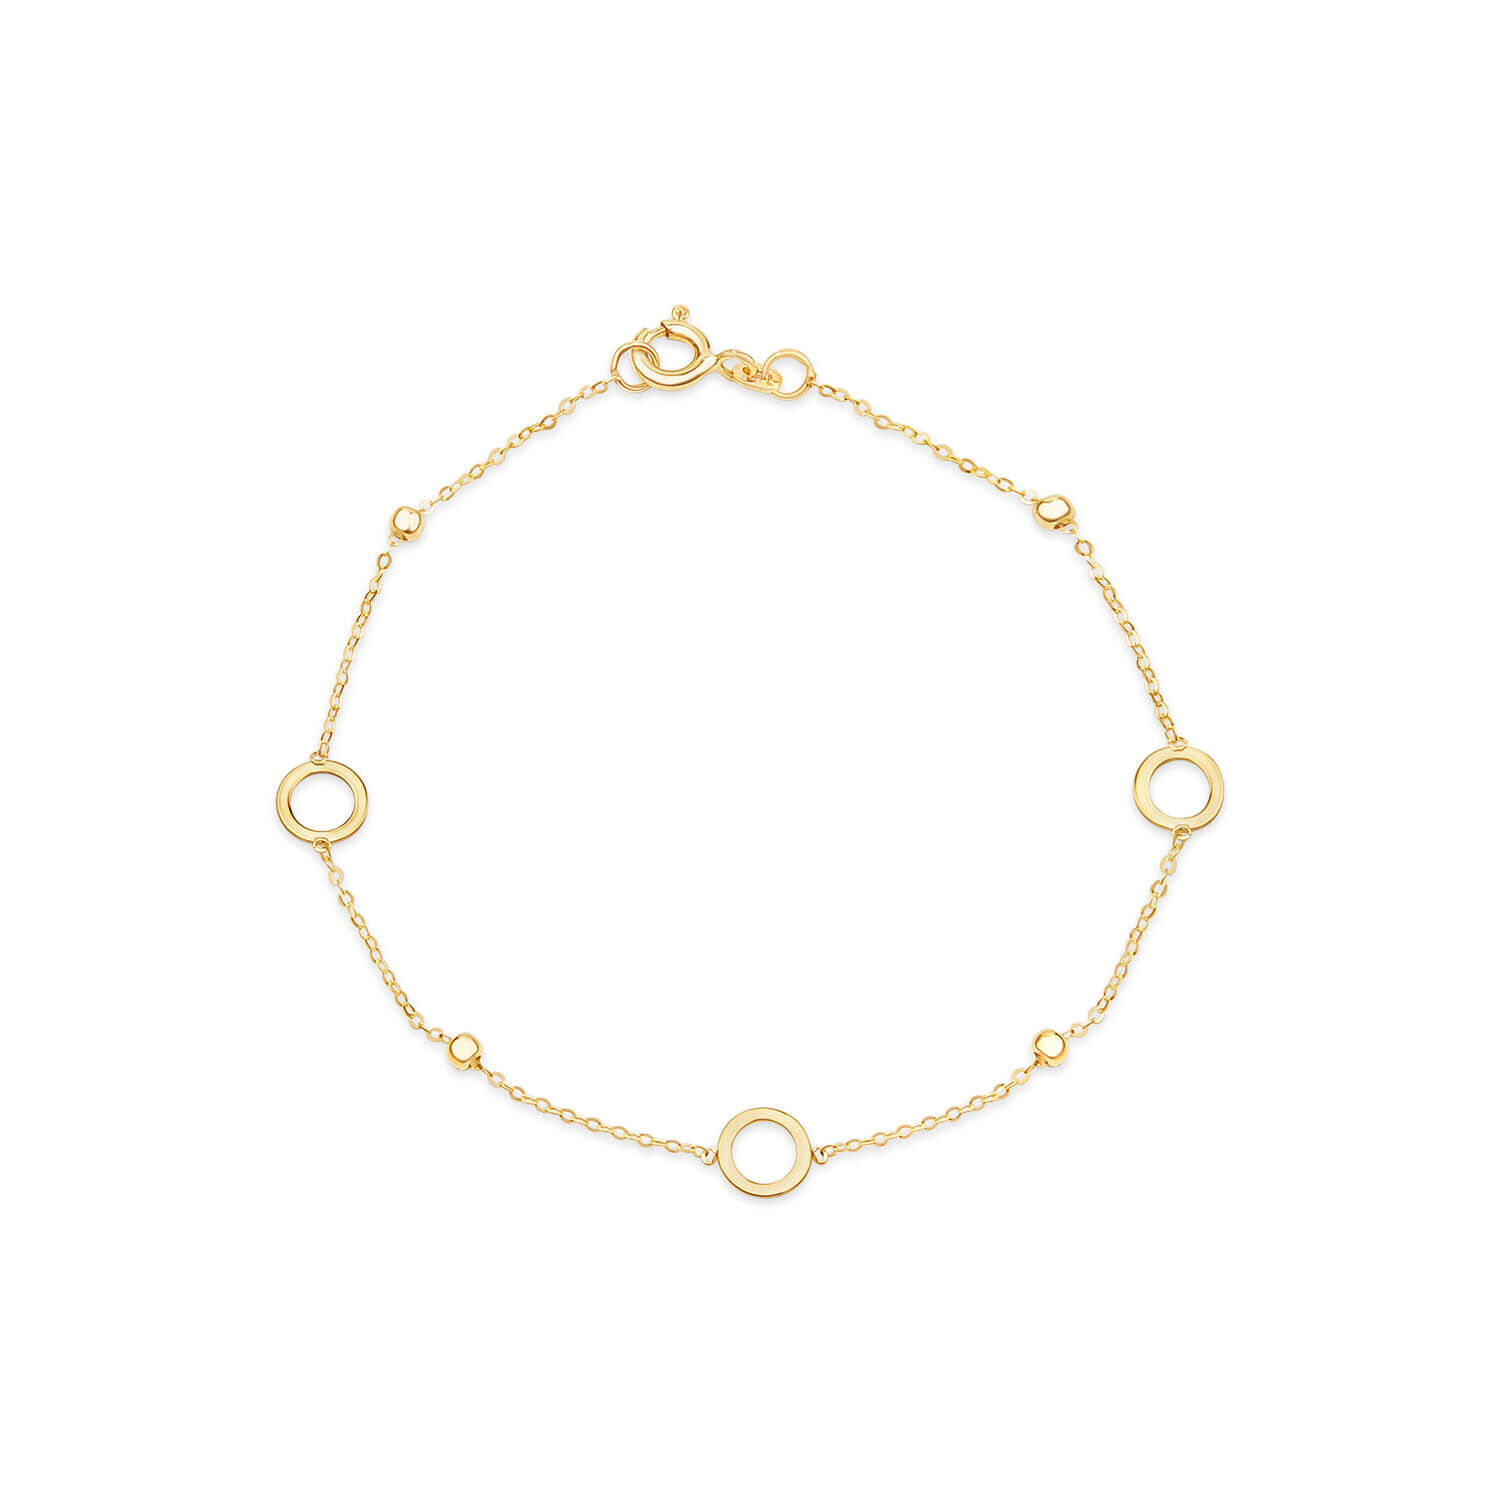 Fanciest Golden Ball Bracelet – JTG Jewelry